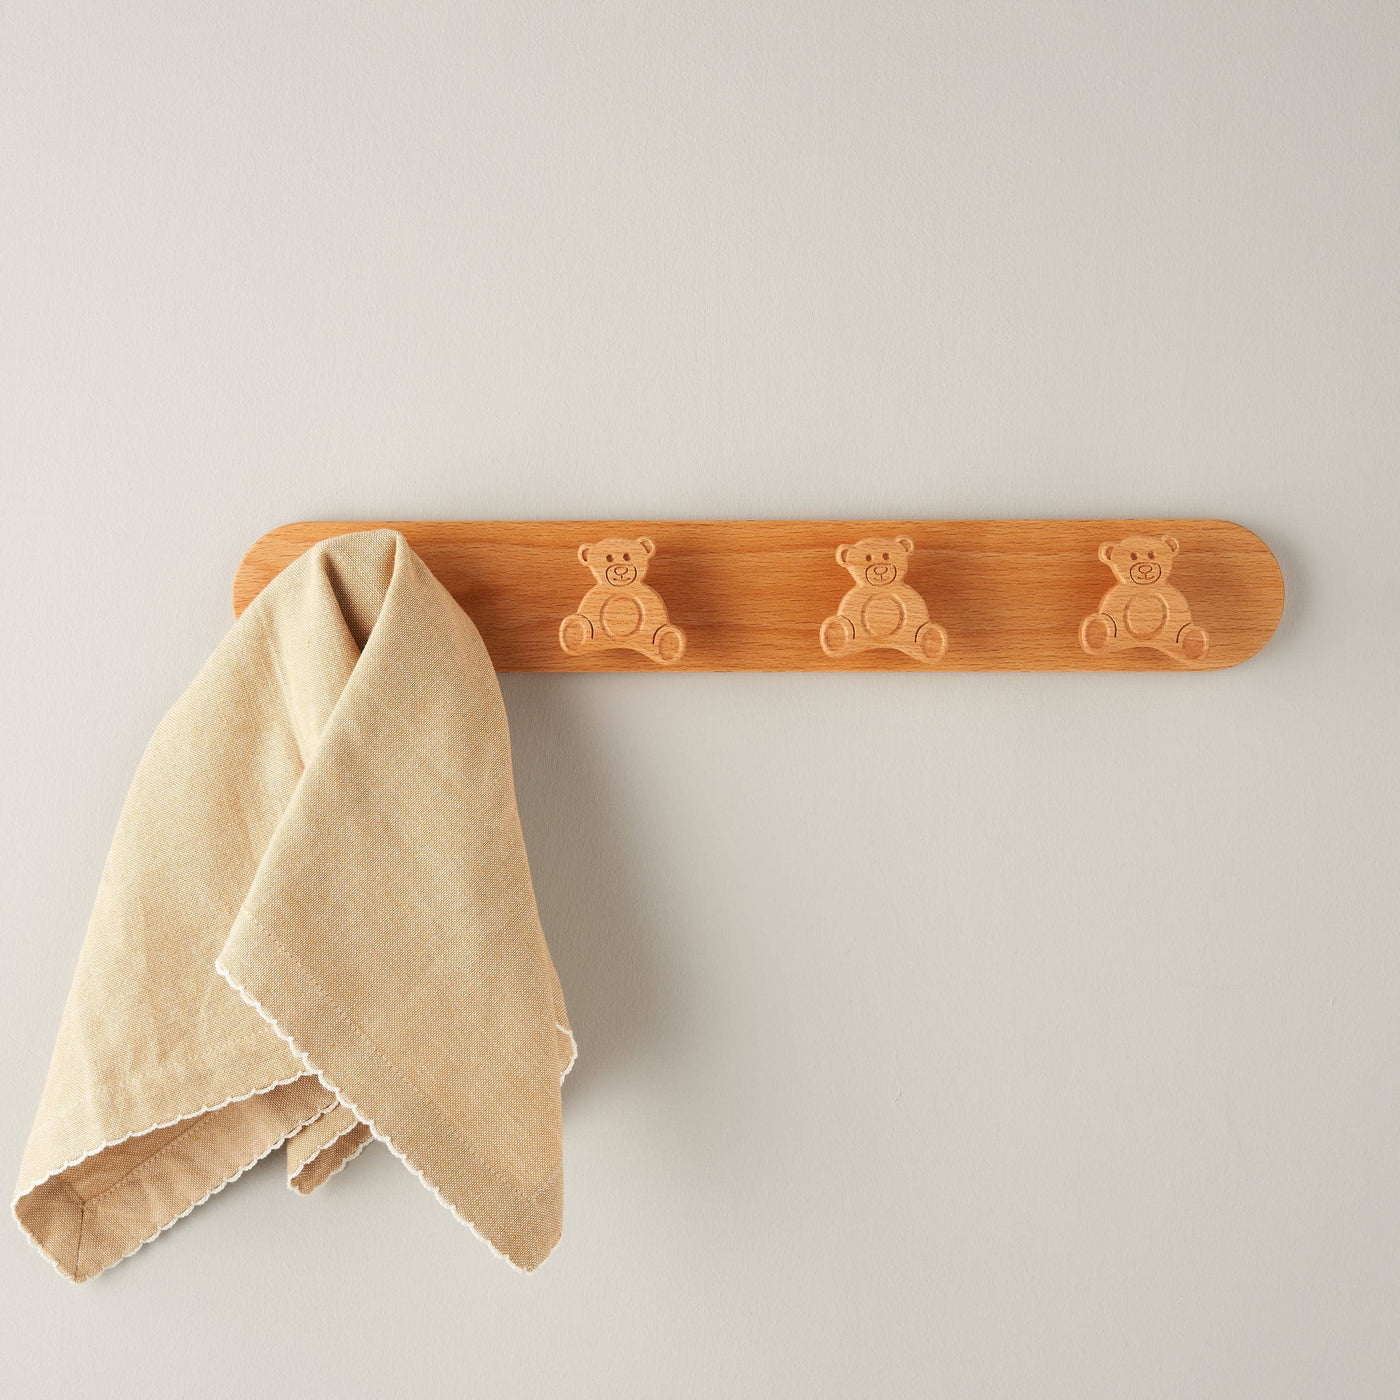 Teddy Coat Hanger, Brown, 41x6x3.4 cm - 2